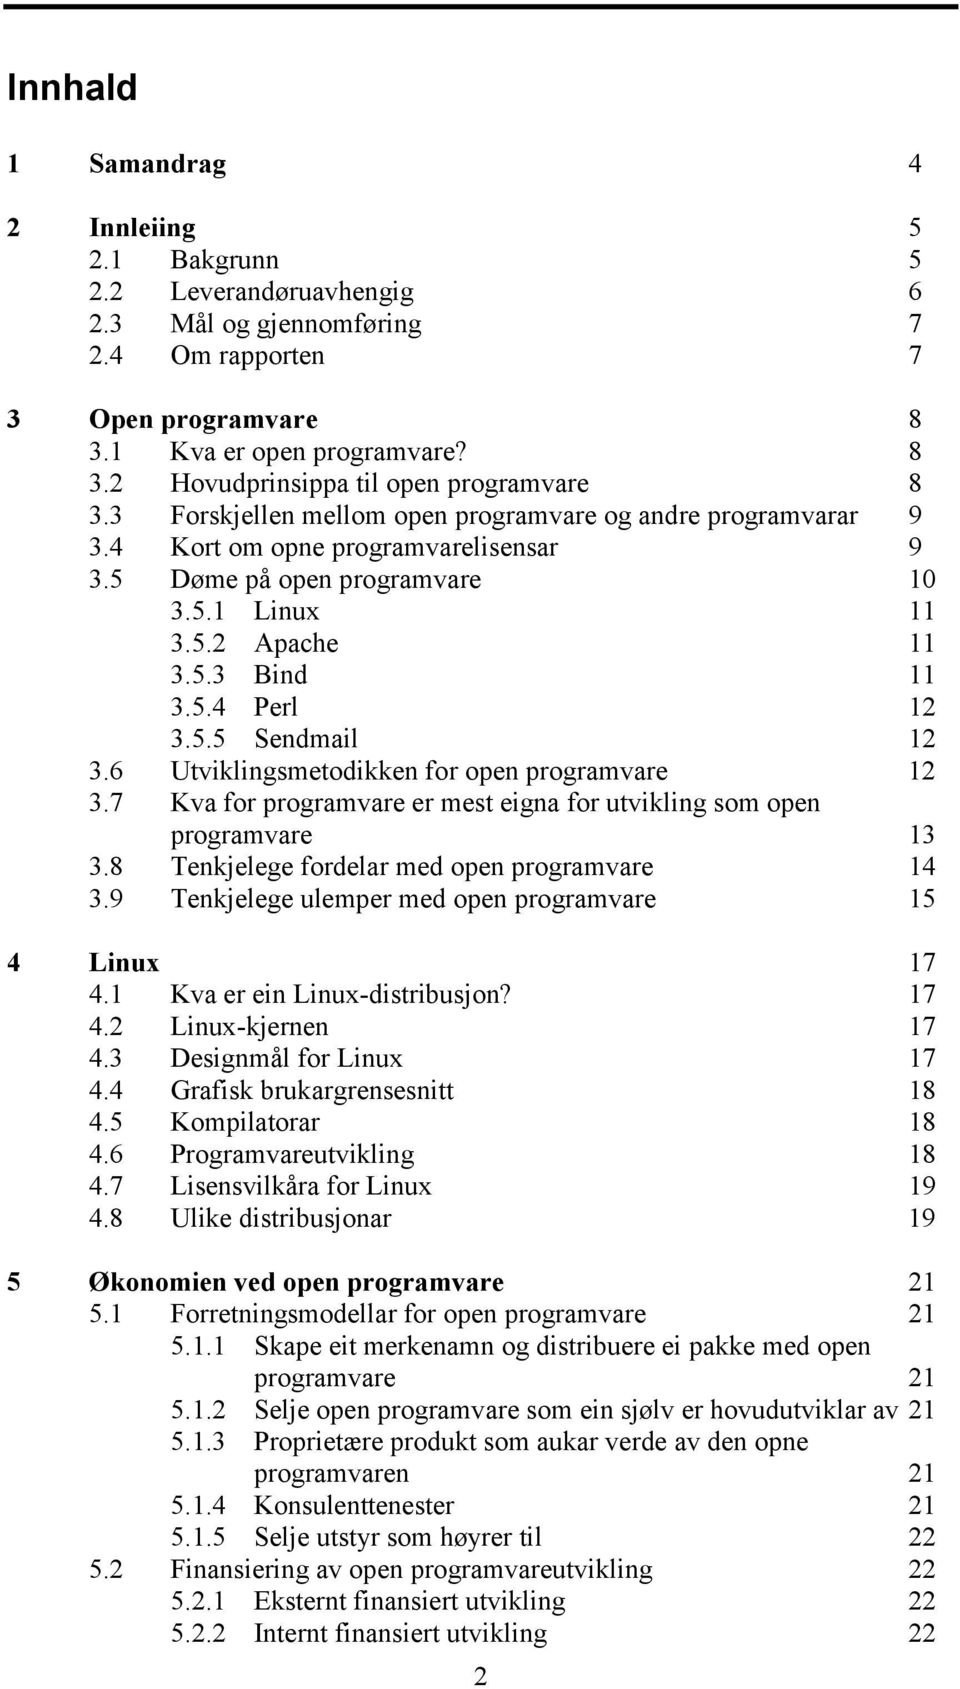 6 Utviklingsmetodikken for open programvare 12 3.7 Kva for programvare er mest eigna for utvikling som open programvare 13 3.8 Tenkjelege fordelar med open programvare 14 3.